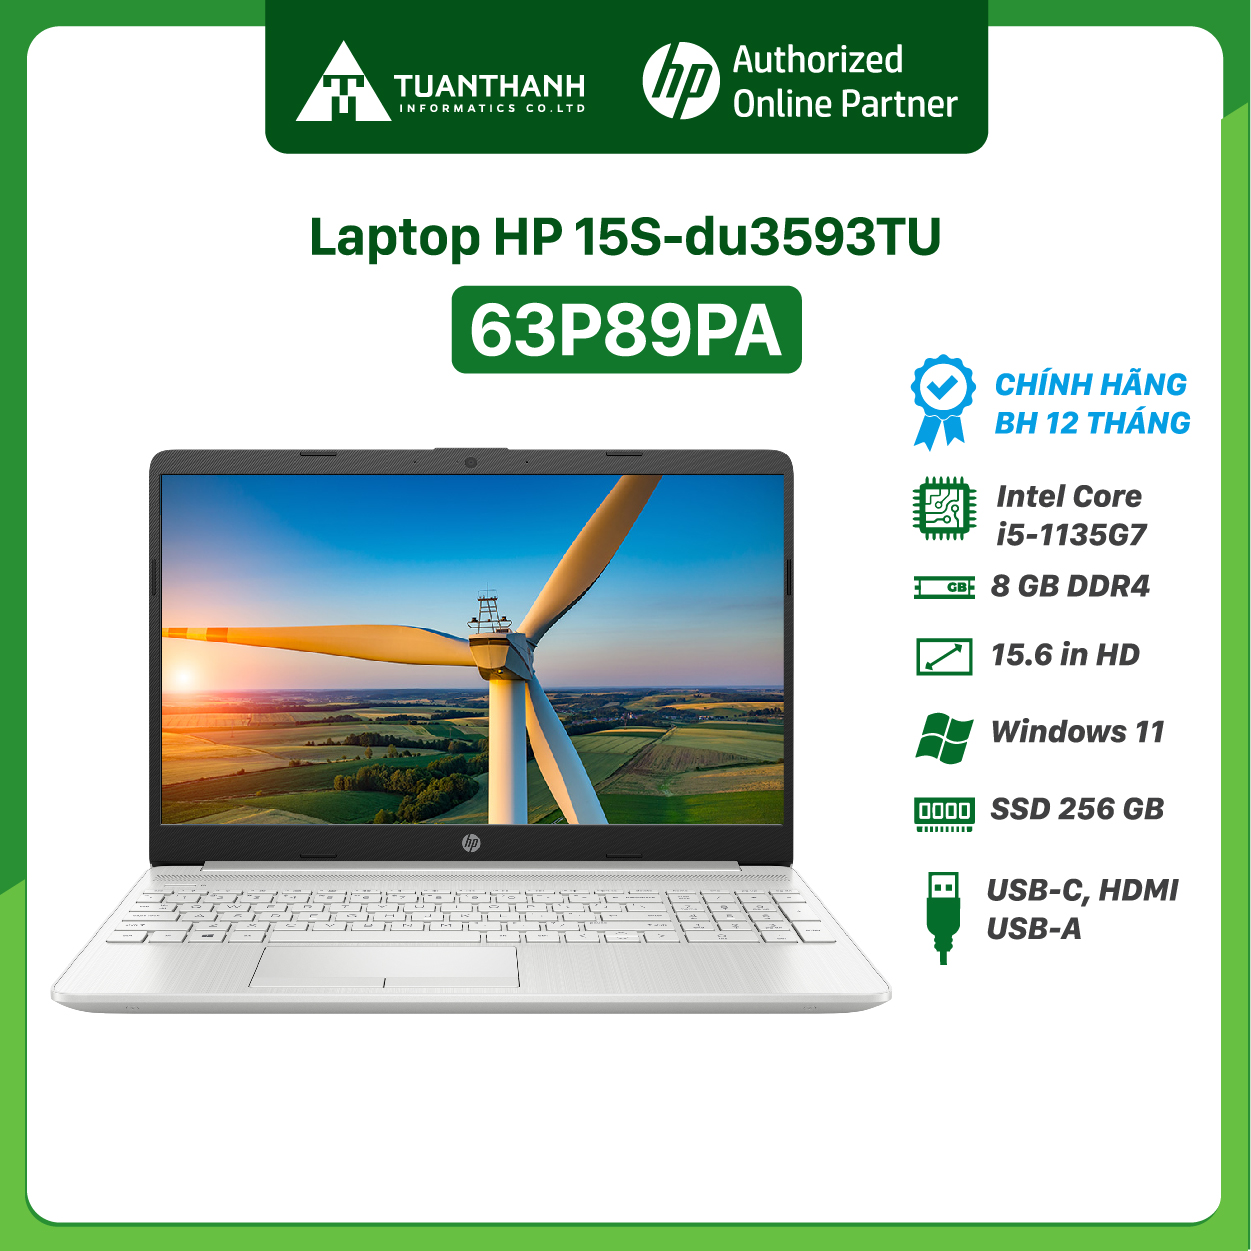 Laptop HP 15S-DU3593TU i5-1135G7/8GB/256GB/Win11 (63P89PA)/Màu Bạc- Hàng Chính Hãng